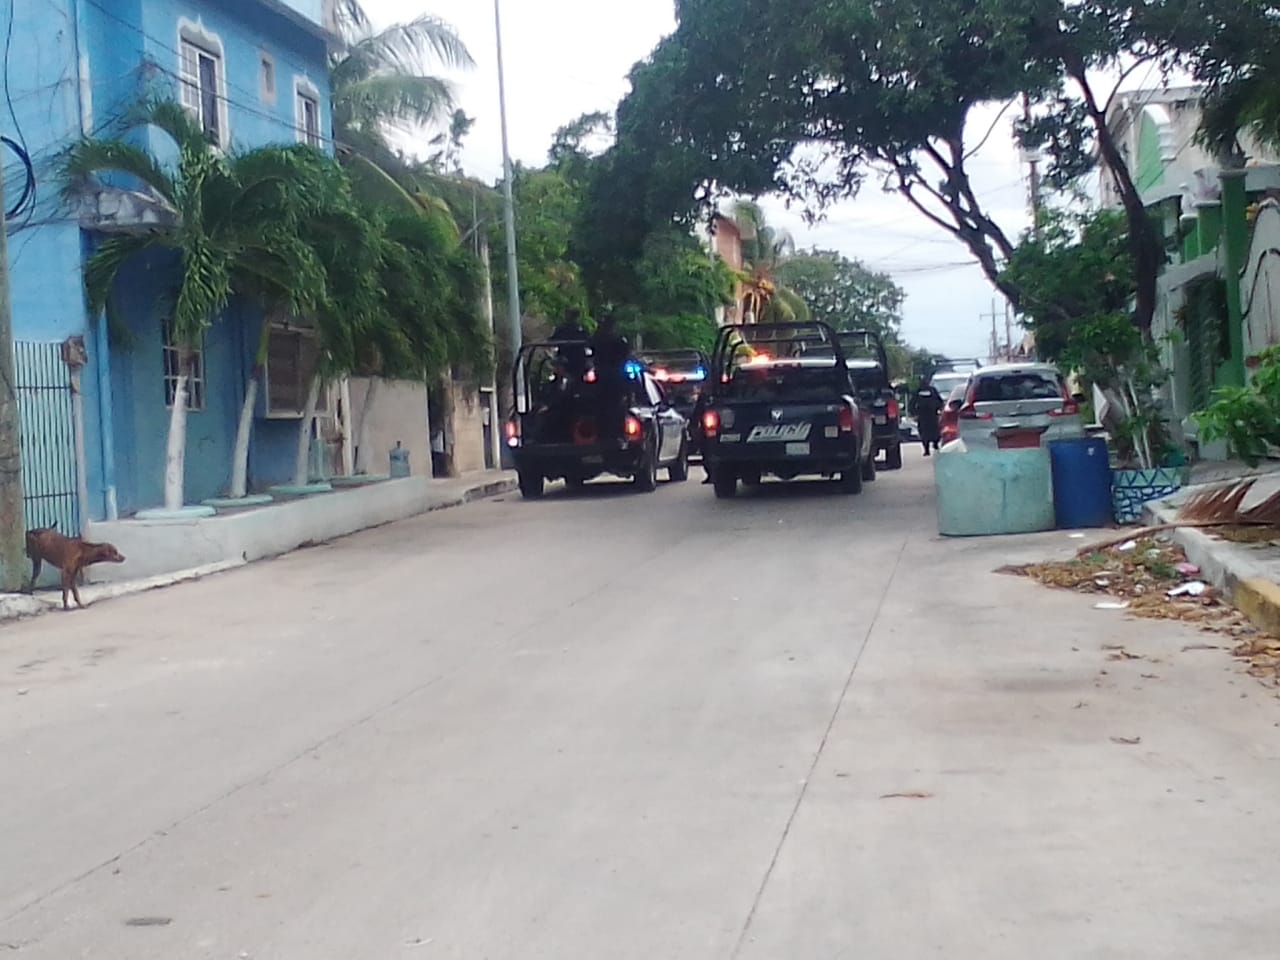 Elementos policiacos acudieron a la colonia Luis Donaldo Colosio en Playa del Carmen para realizar el arresto de un hombre y una mujer